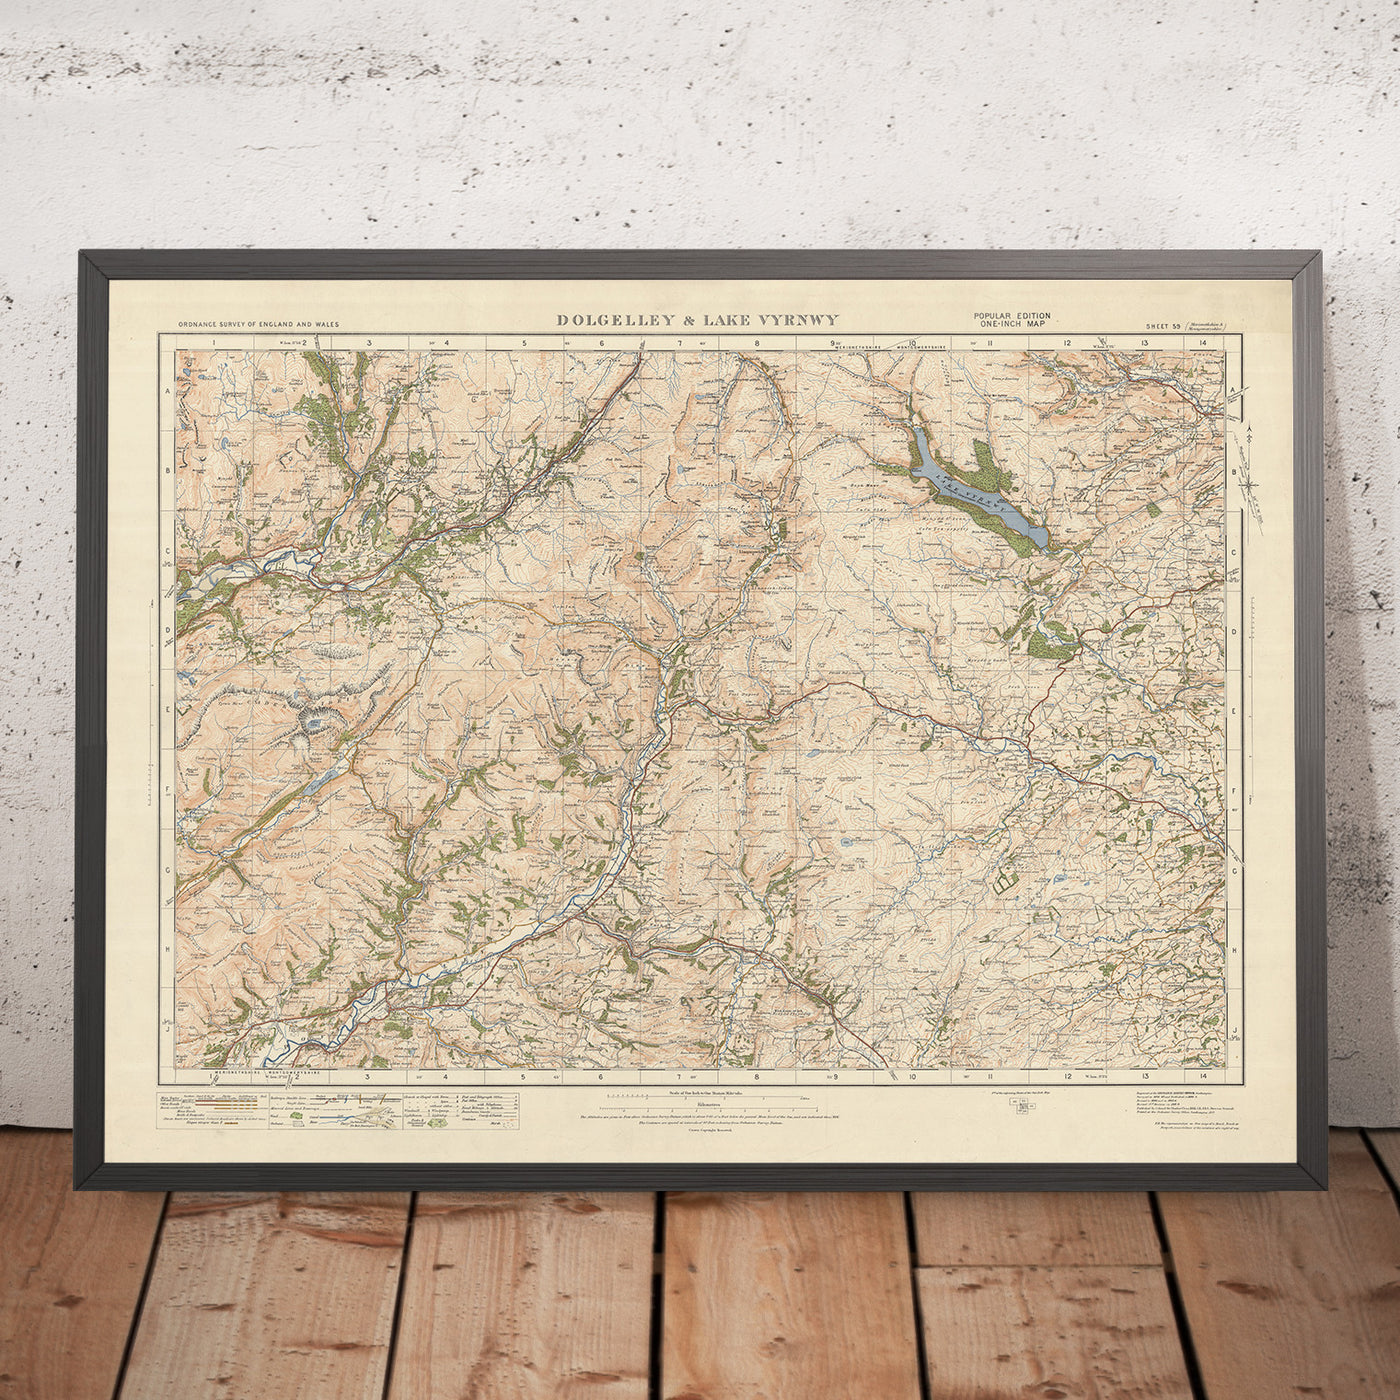 Old Ordnance Survey Map, Blatt 59 – Dolgelly & Lake Vyrnwy, 1925: Machynlleth, Corris, Aberangell, Coed y Brenin Forest Park, Eryri National Park